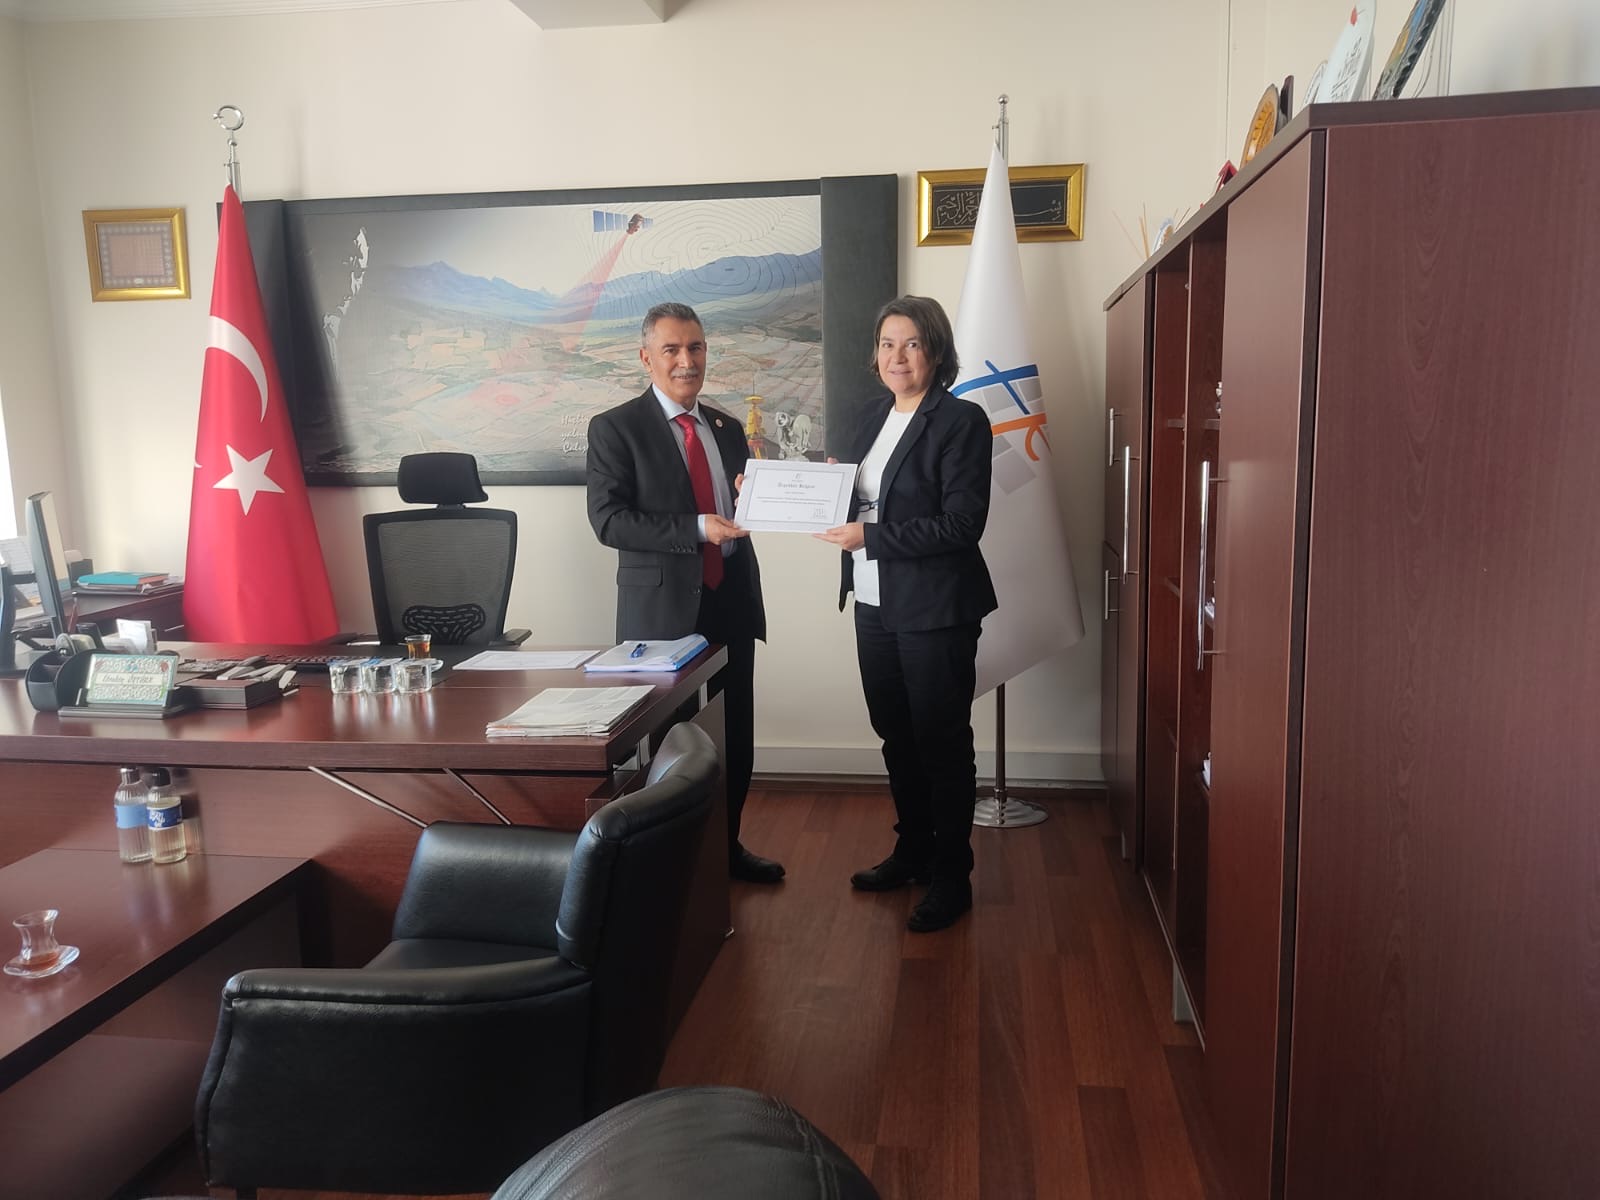 Personel Dairesi Başkanlığında görev yapan başarılı personele Personel Dairesi Başkanı İbrahim ÖZTÜRK tarafından Teşekkür Belgesi verilmiştir.